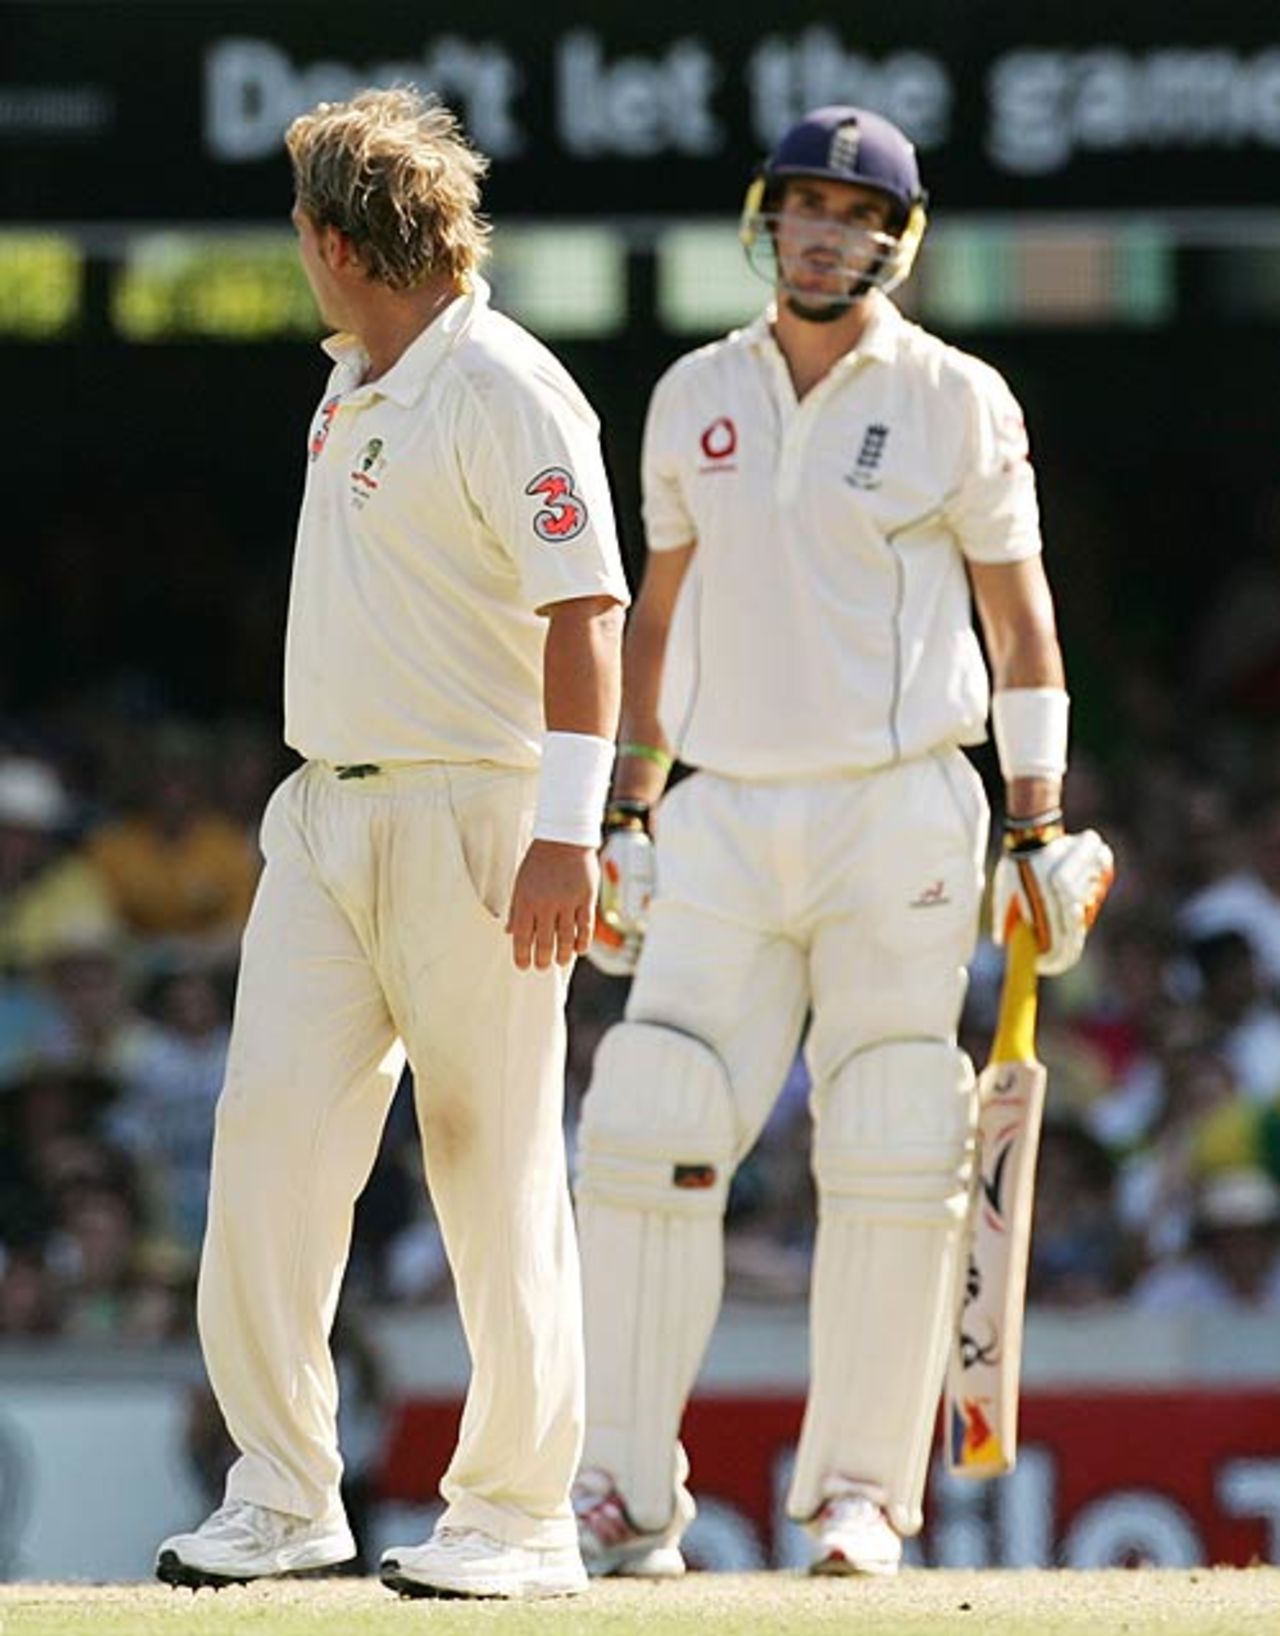 Shane Warne looks back at Kevin Pietersen after an unsuccessful appeal, Australia v England, 1st Test, Brisbane, November 26, 2006